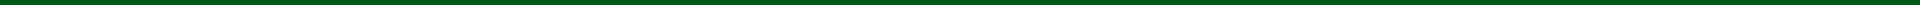 divider-green-dark